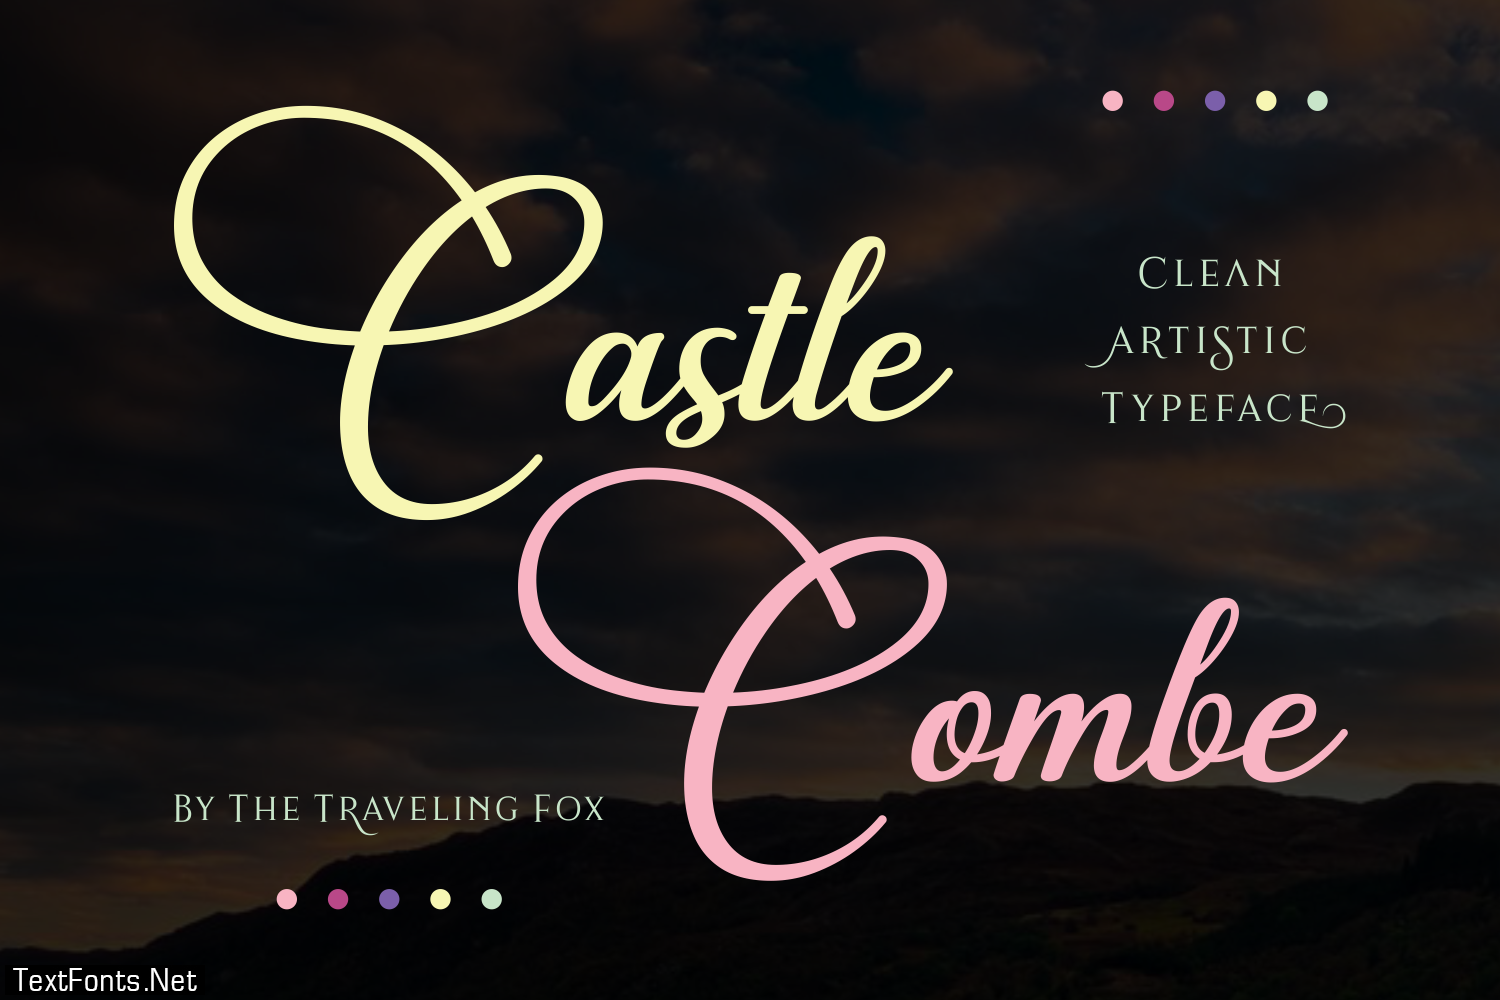 Castle Combe Font